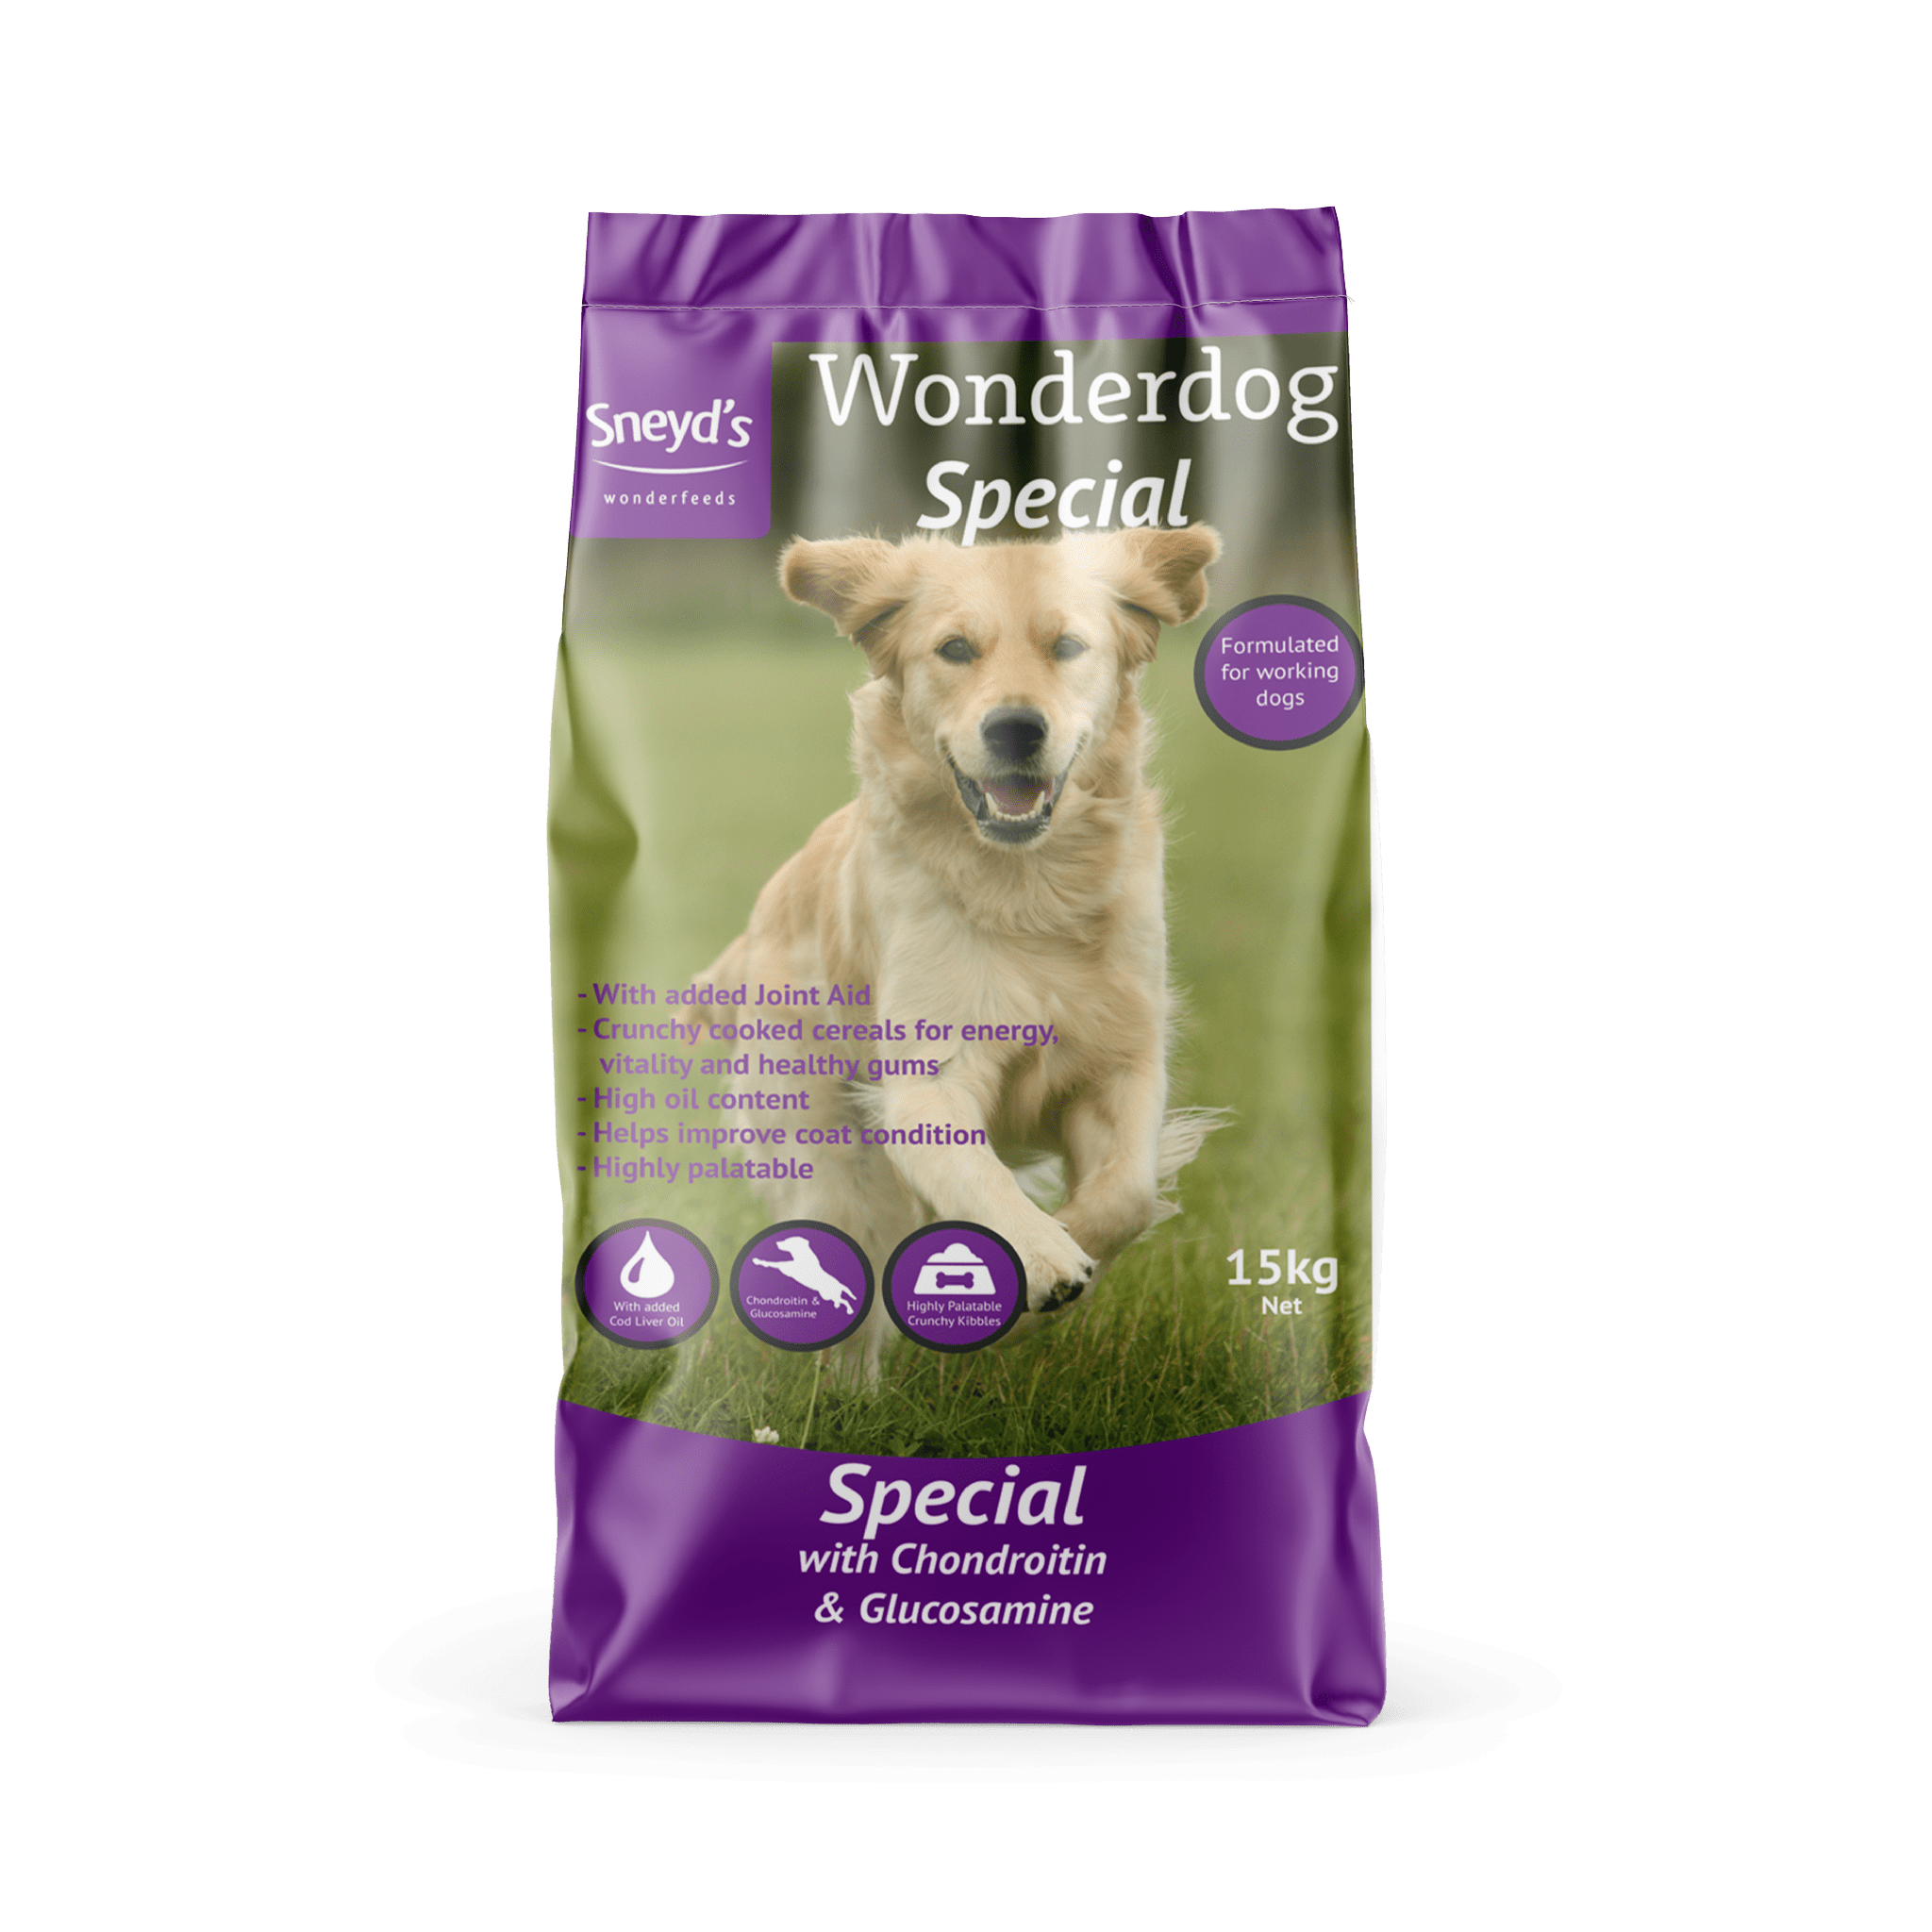 Sneyds Wonderdog Special Dog Food 15kg